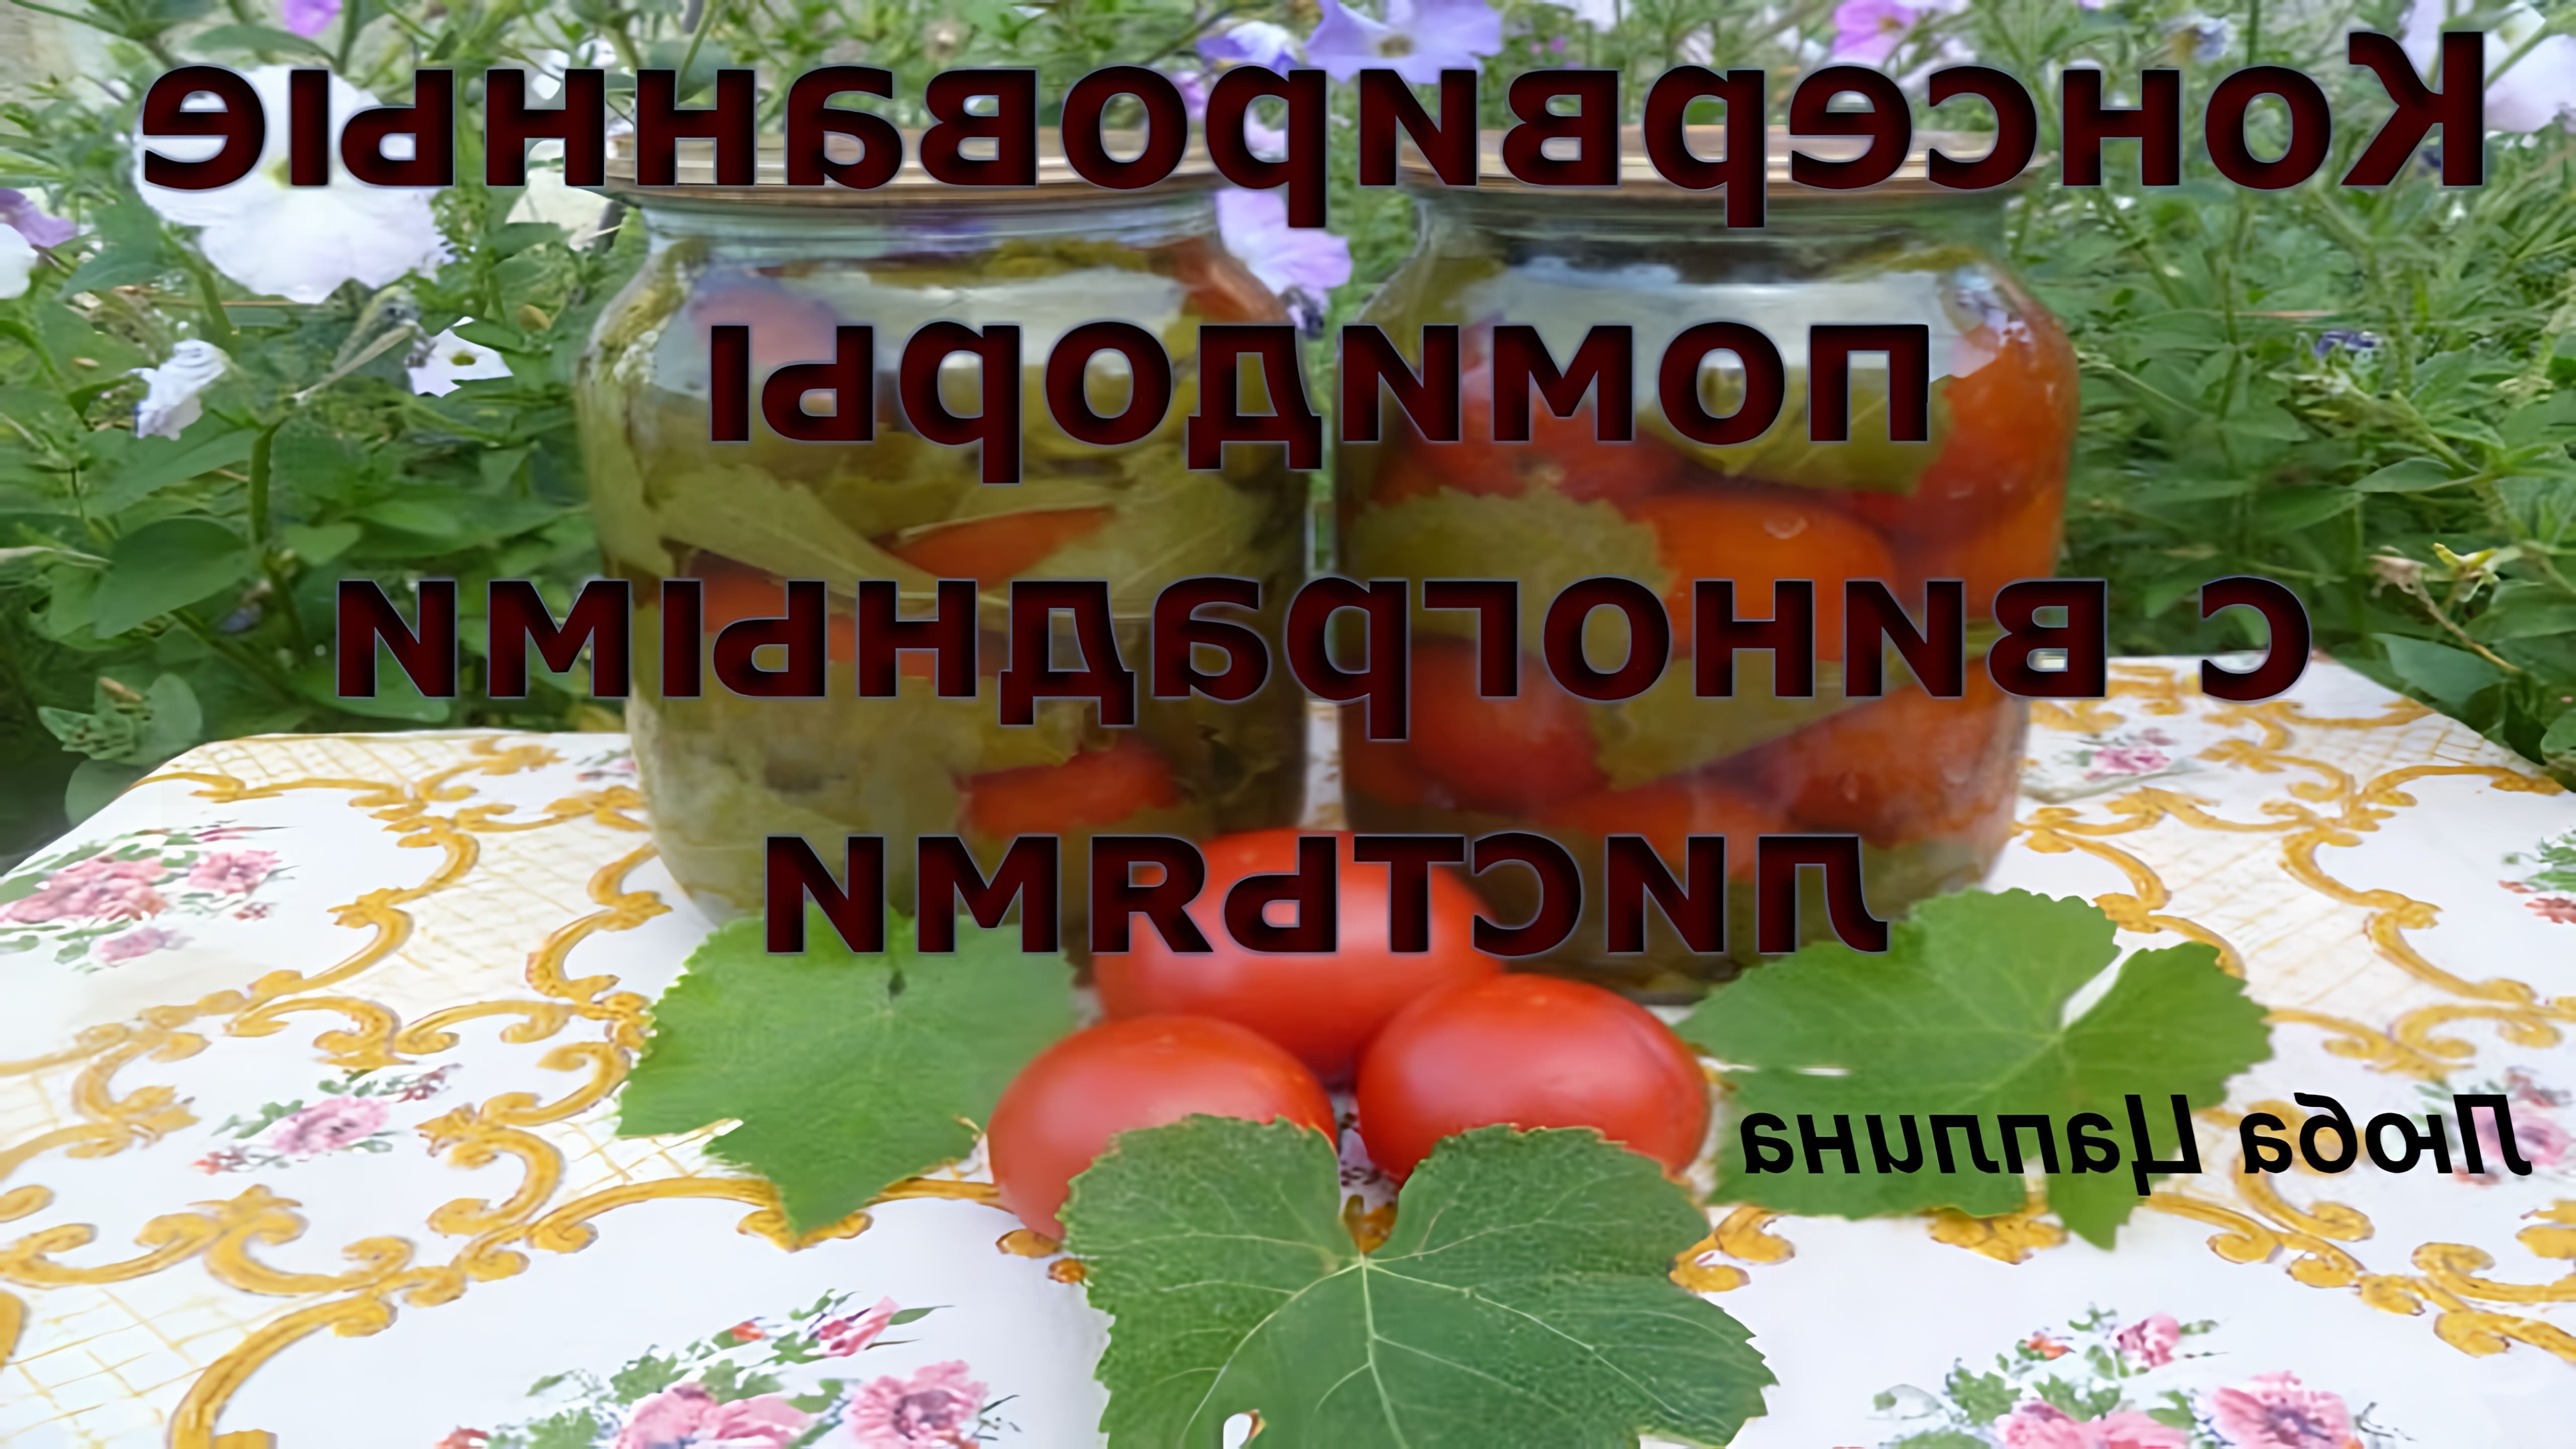 В этом видео демонстрируется рецепт консервирования помидоров с виноградными листьями